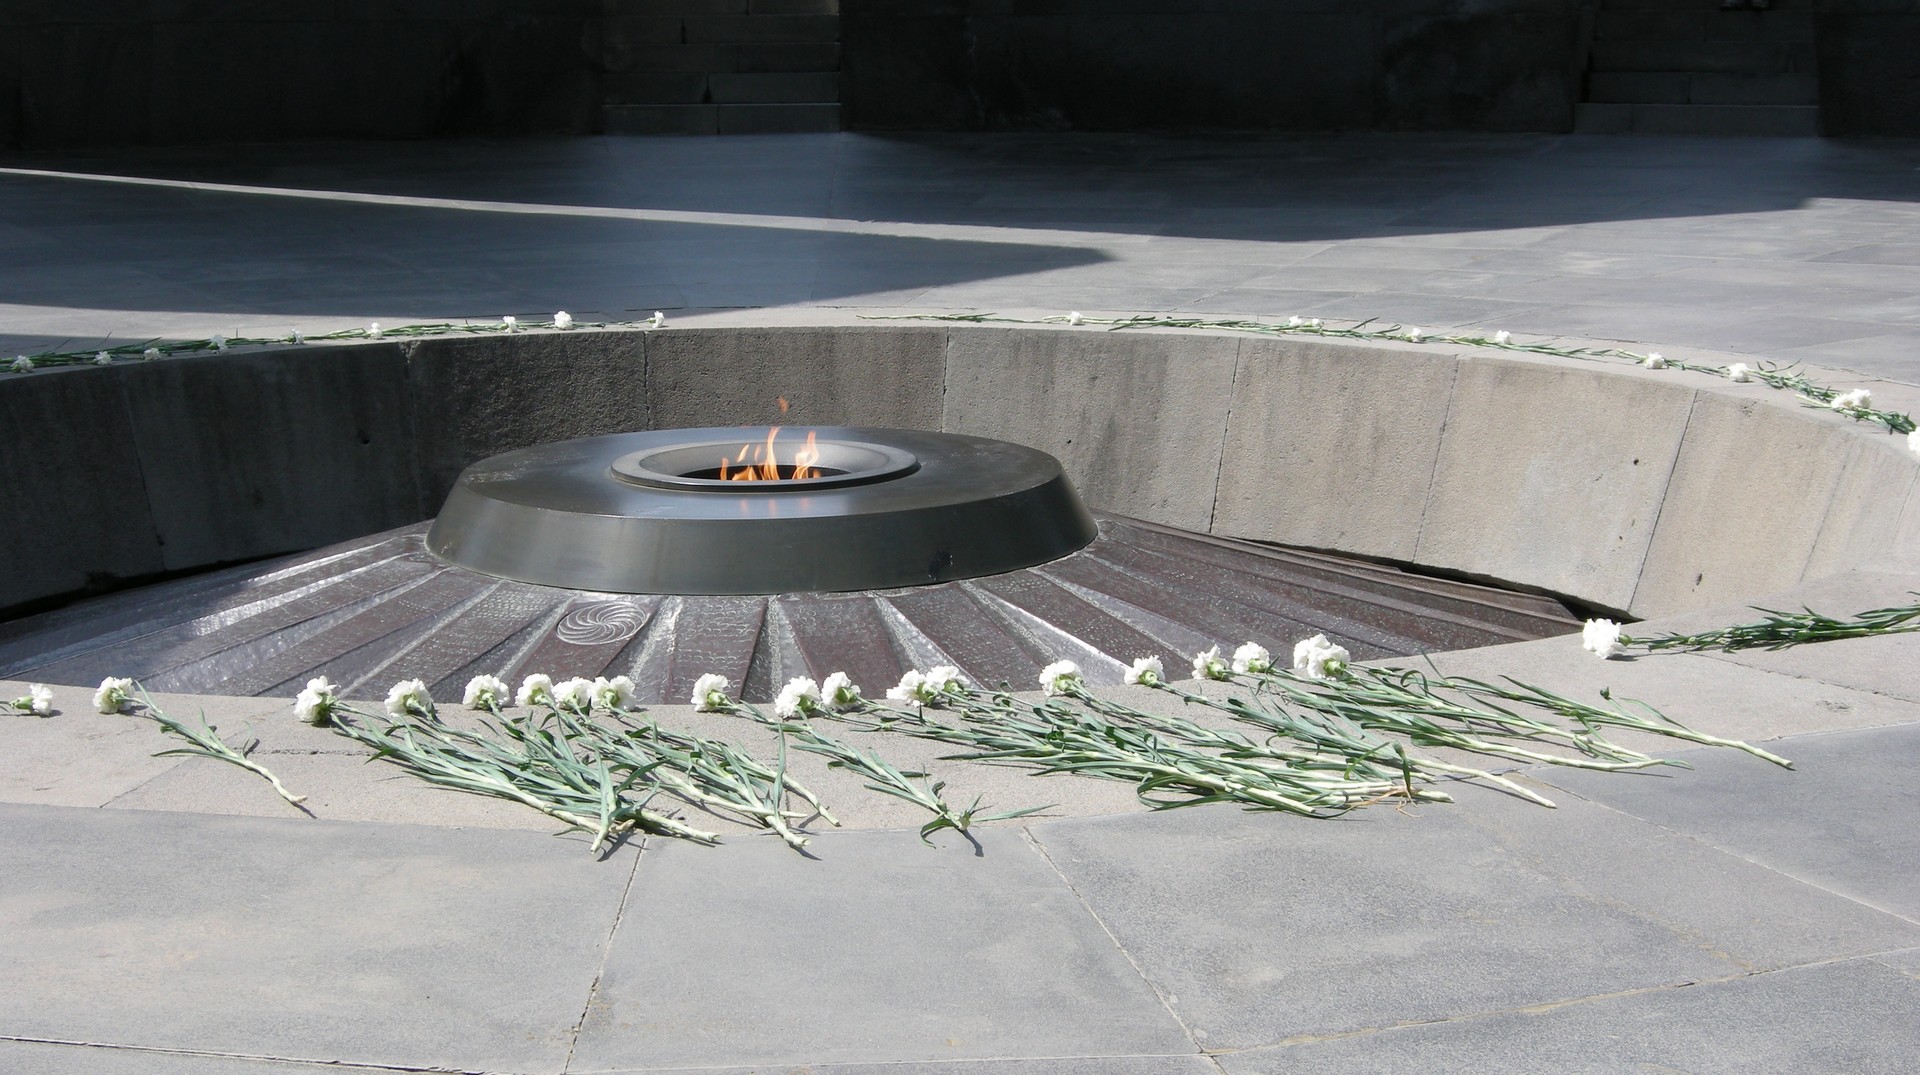 Le mémorial du génocide arménien de 1915 à Erevan (photo Maurice Page)